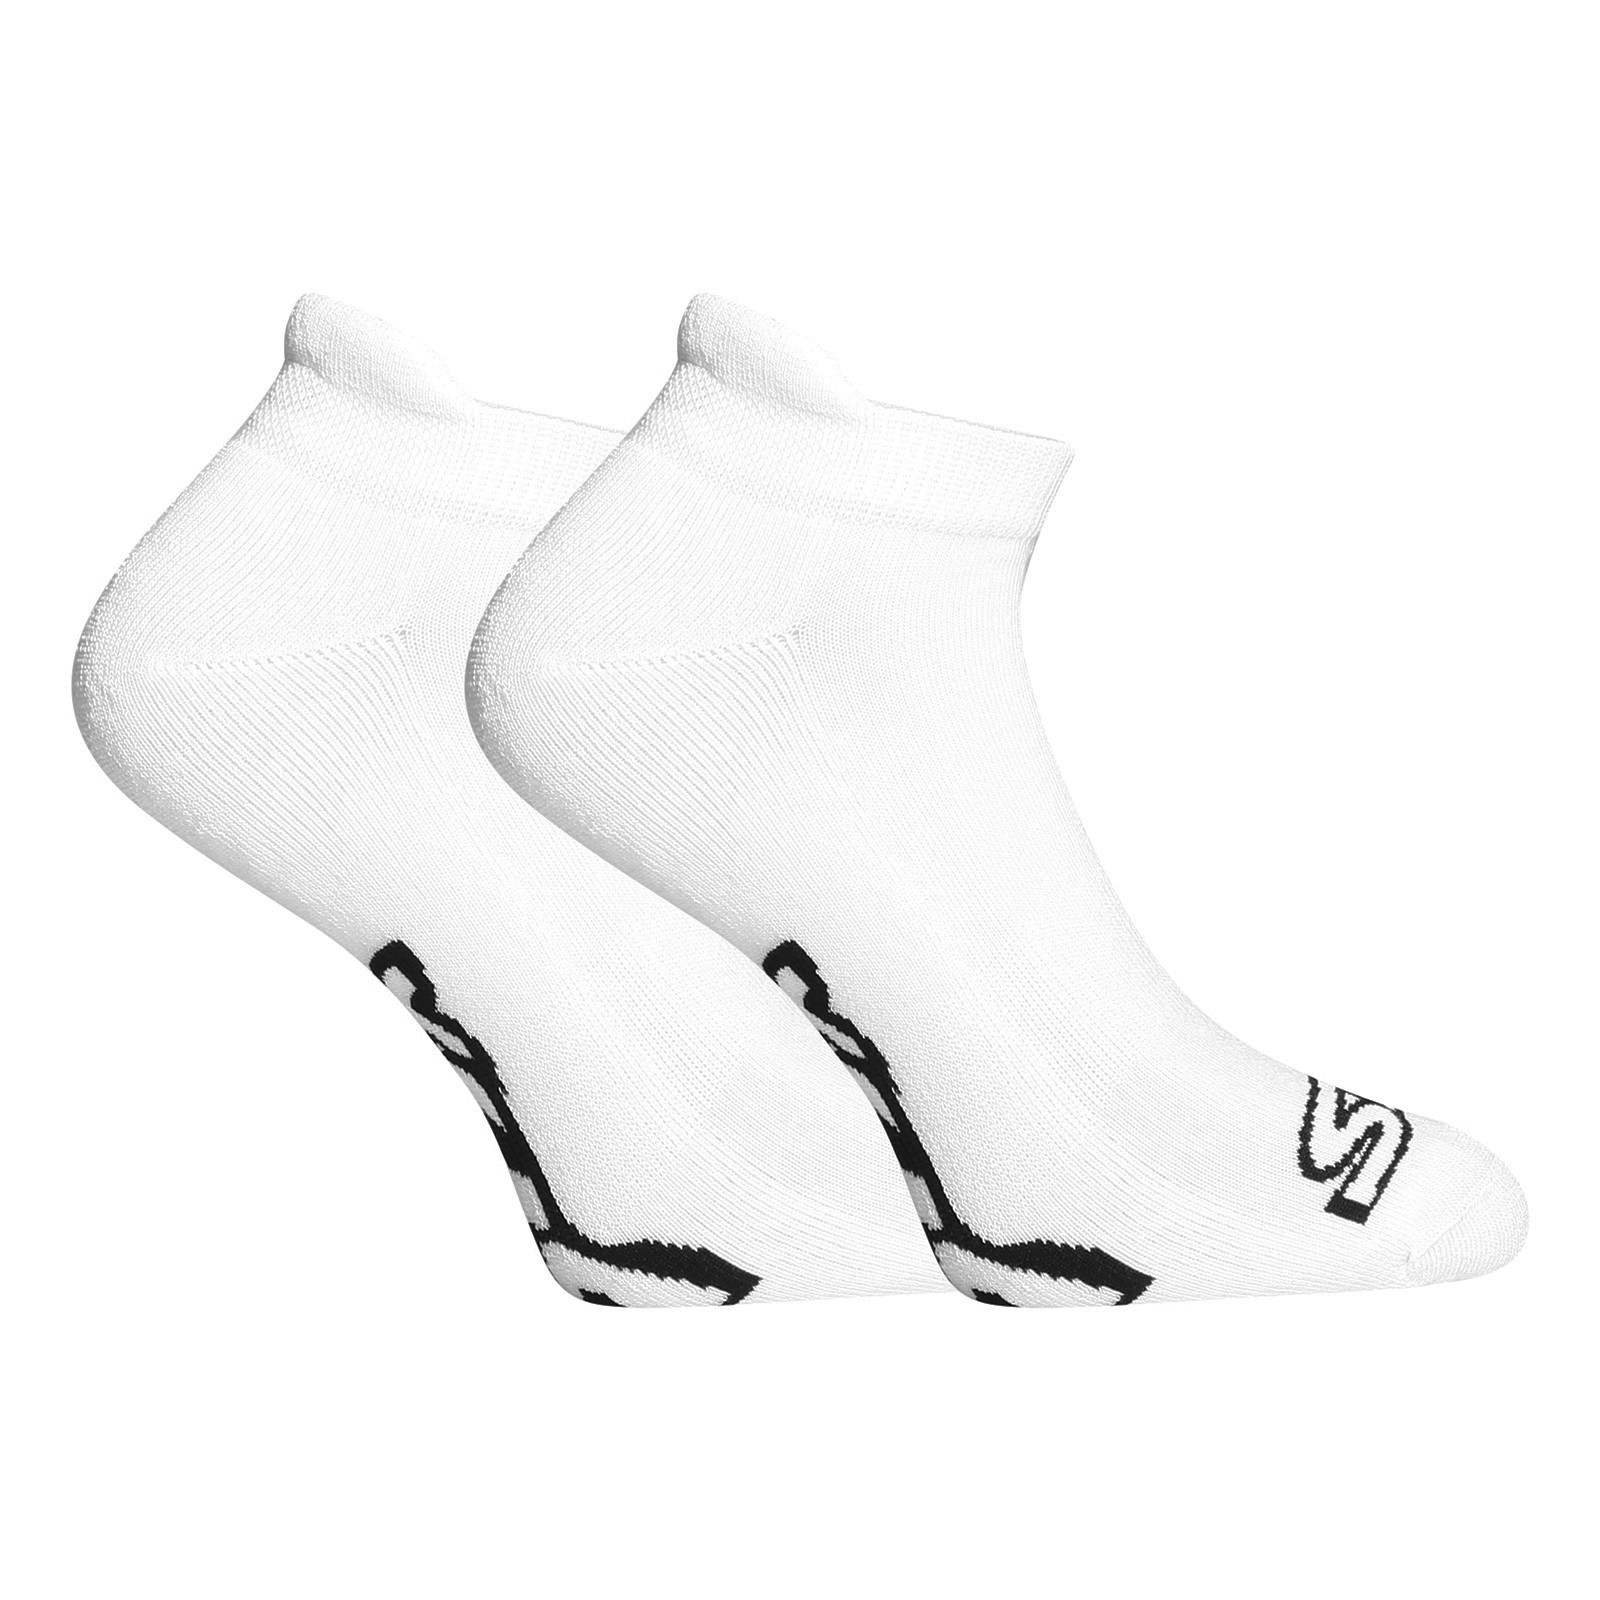 E-shop Ponožky Styx nízké bílé s černým logem